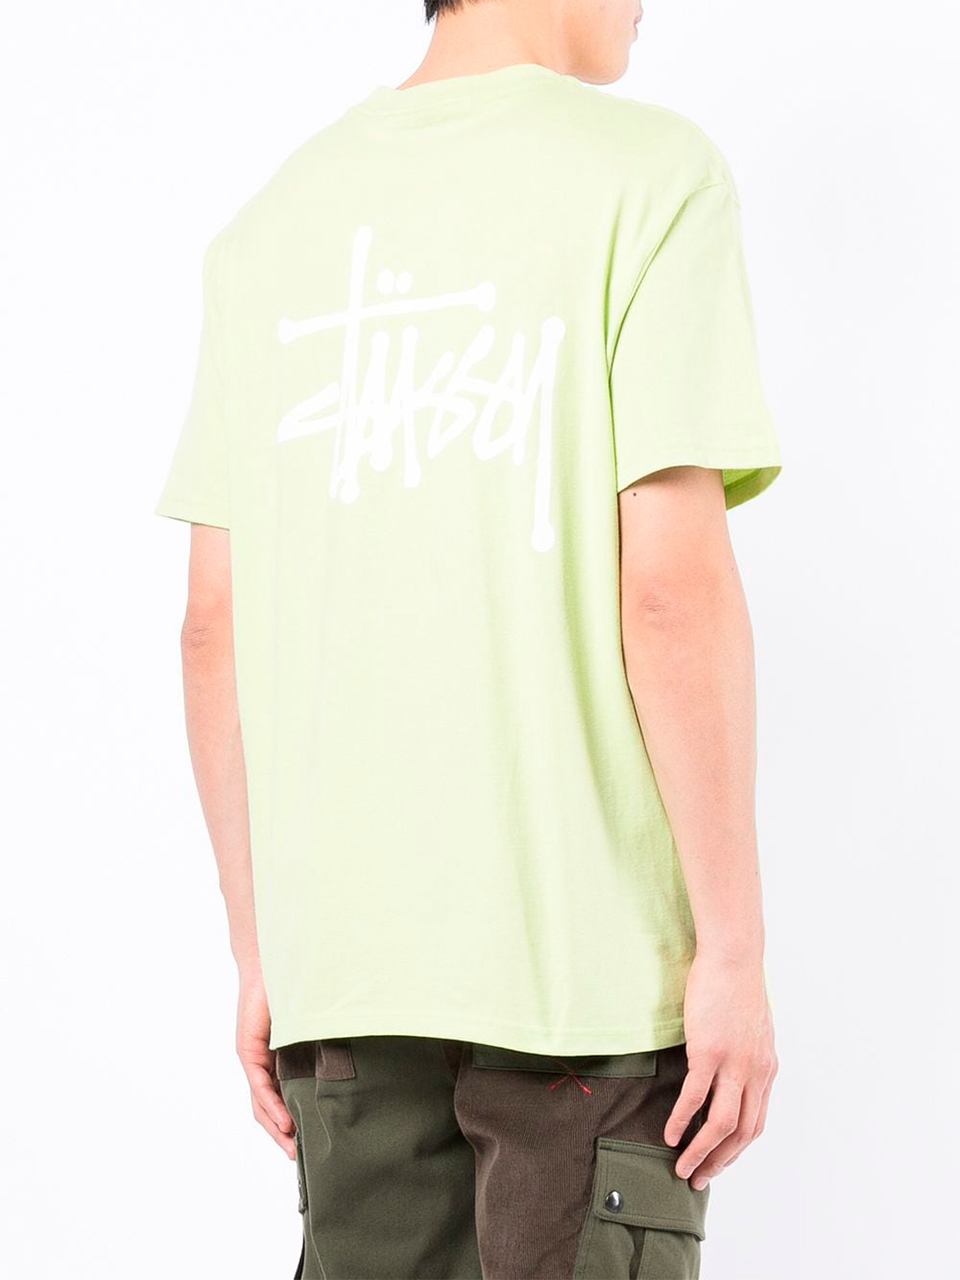 Imagem de: Camiseta Stussy Verde com Logo